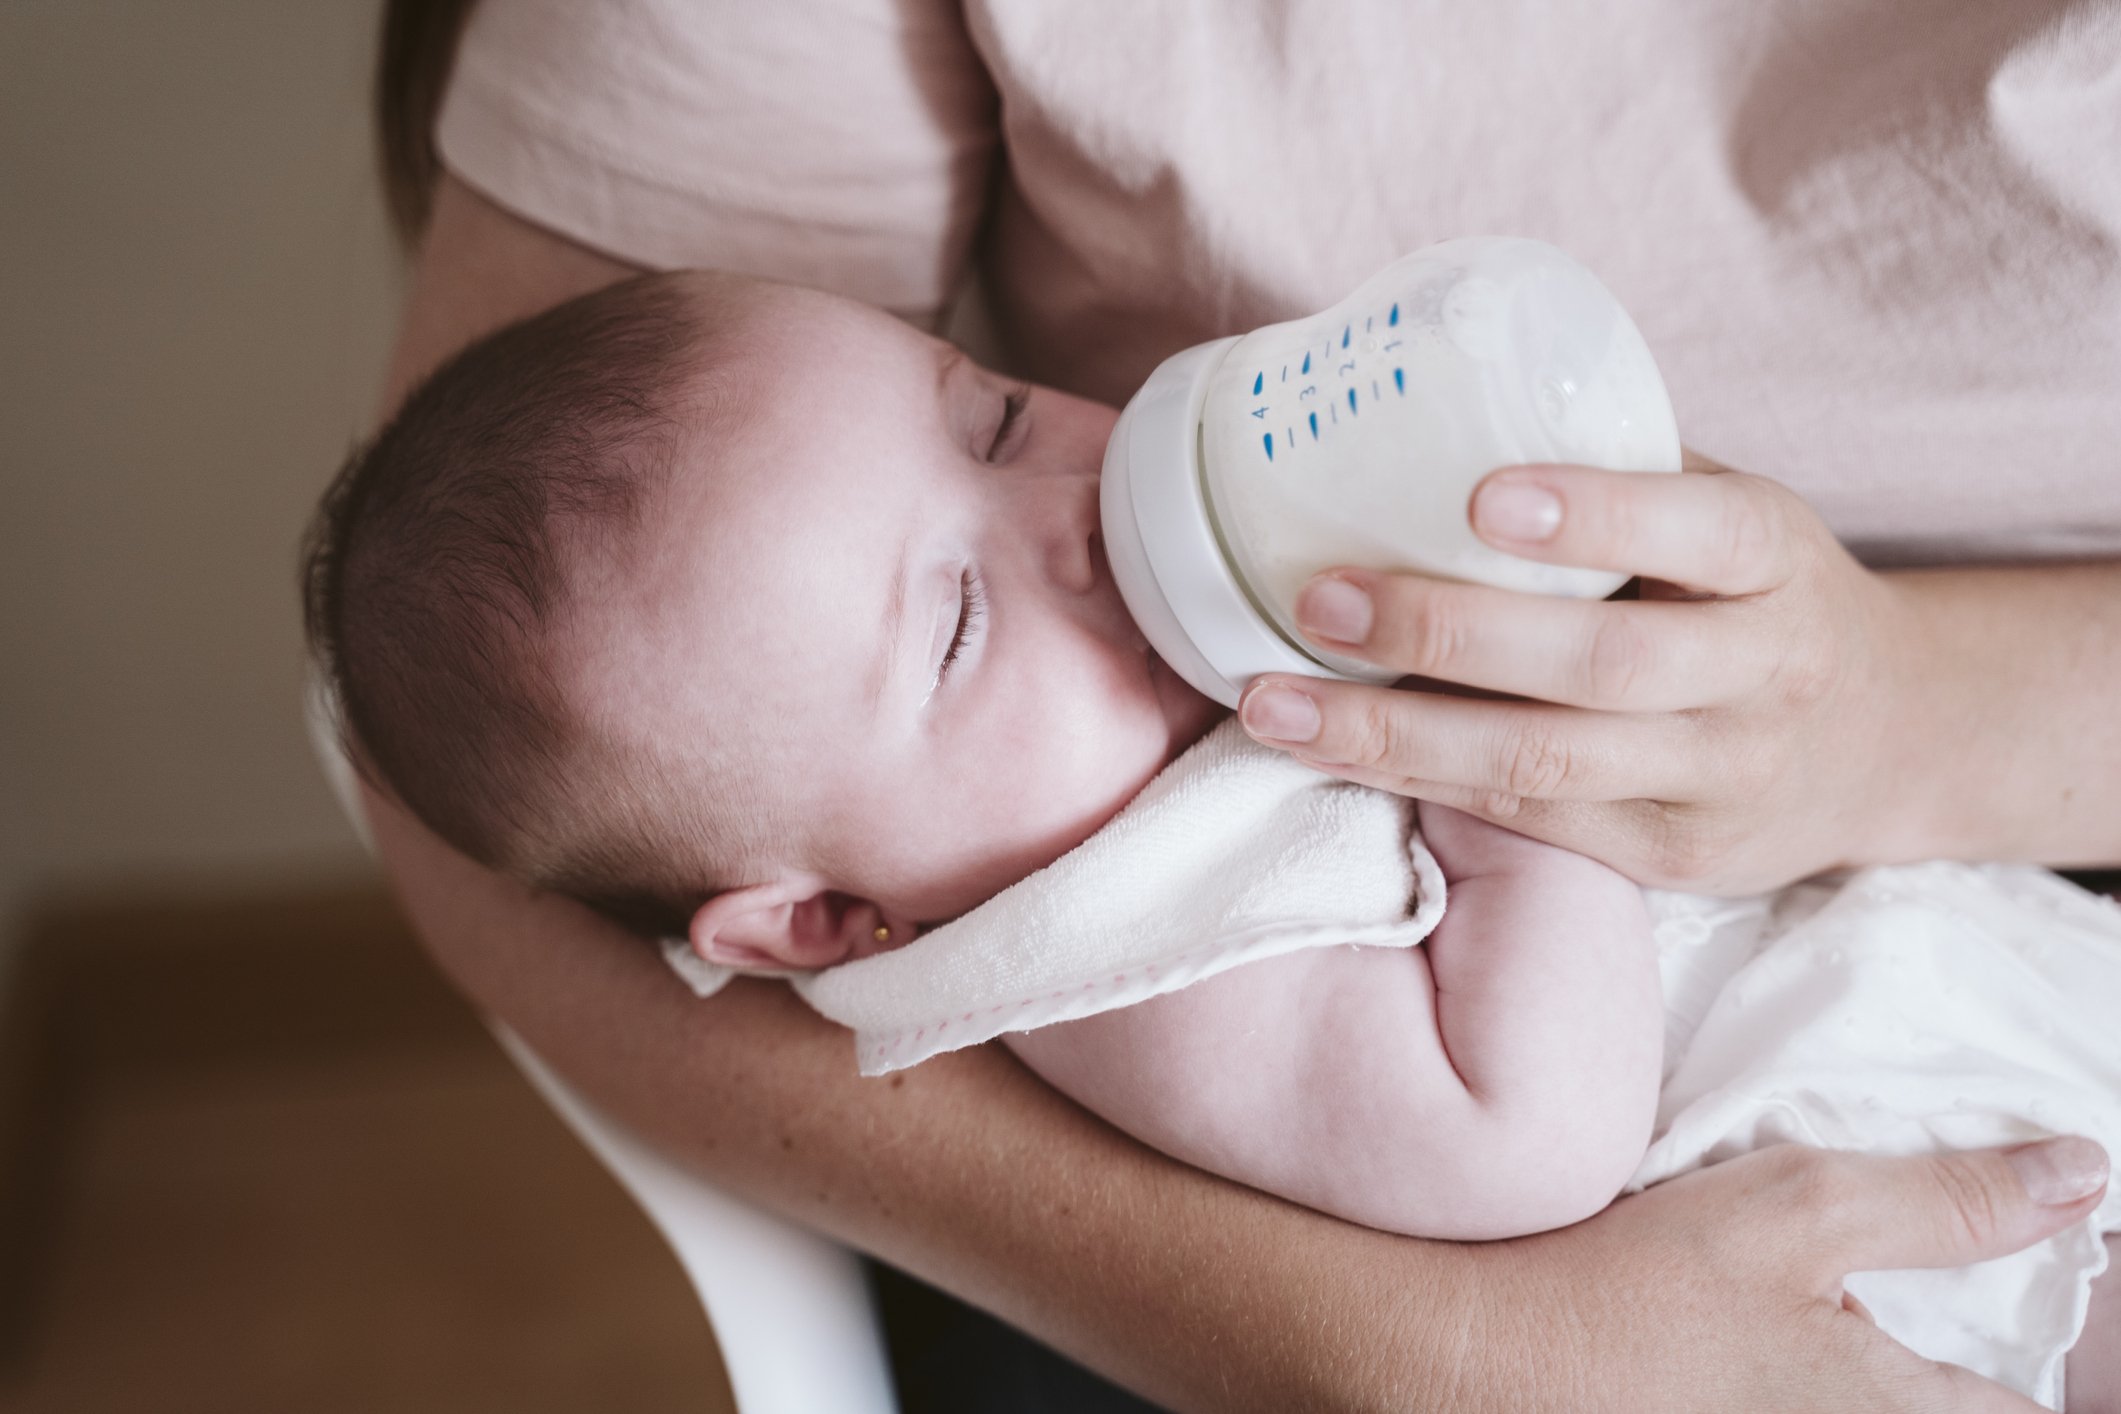 Mutter füttert Baby mit einer Flasche | Quelle: Getty Images